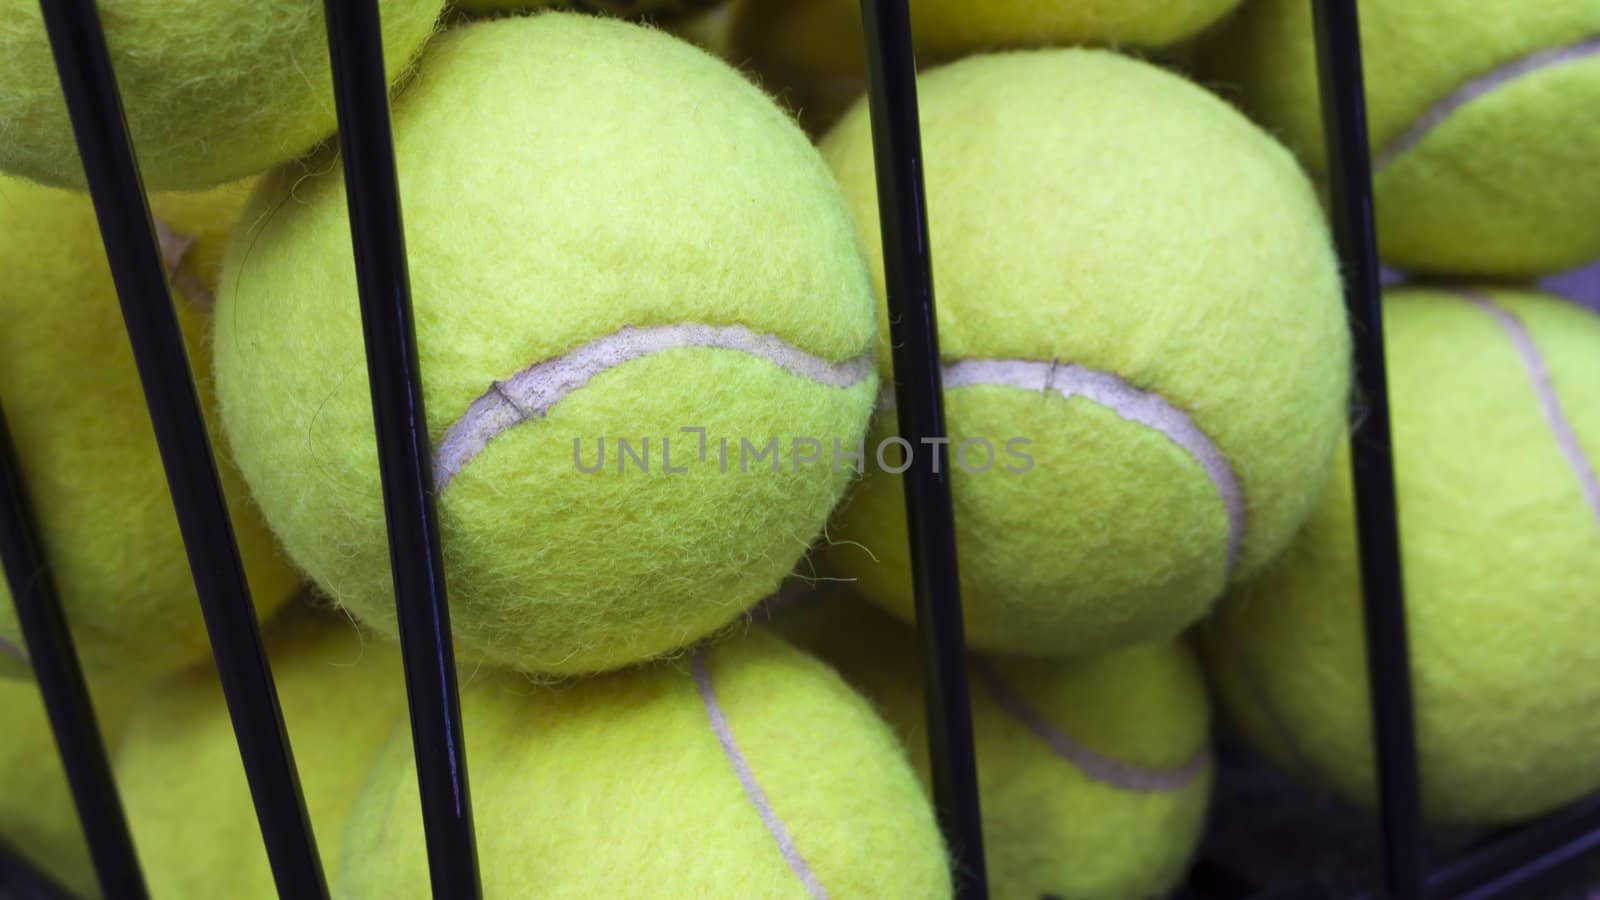 Tennis Balls Behind Bars by Sukha